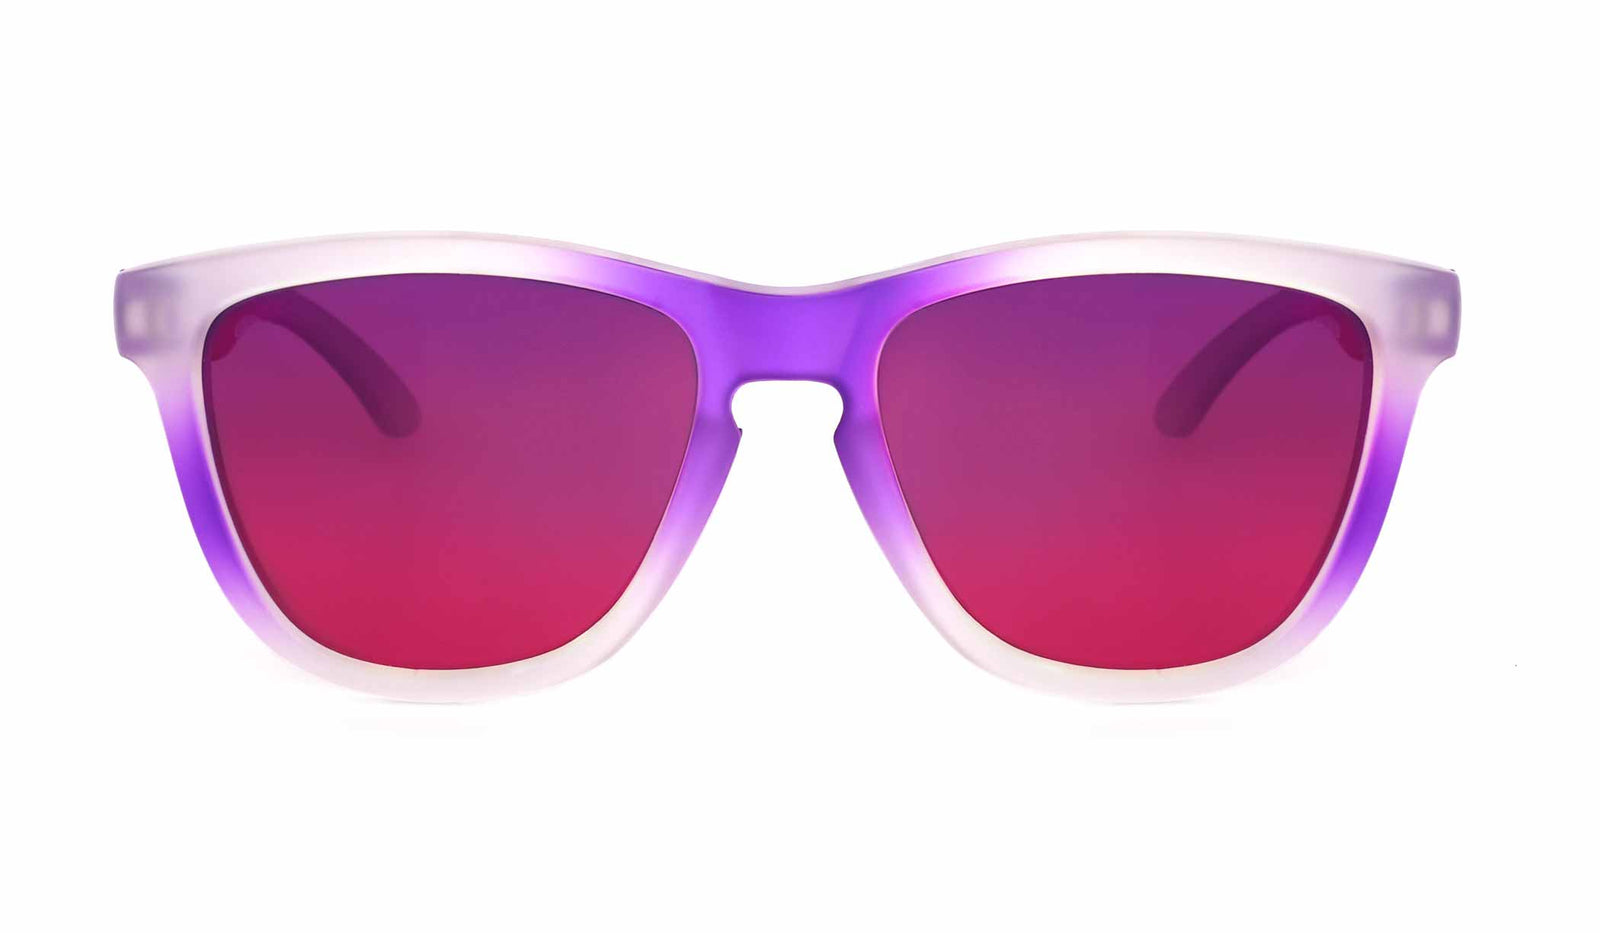 Floaterz Polarized Floating Sunglasses Black Frame – WindRider